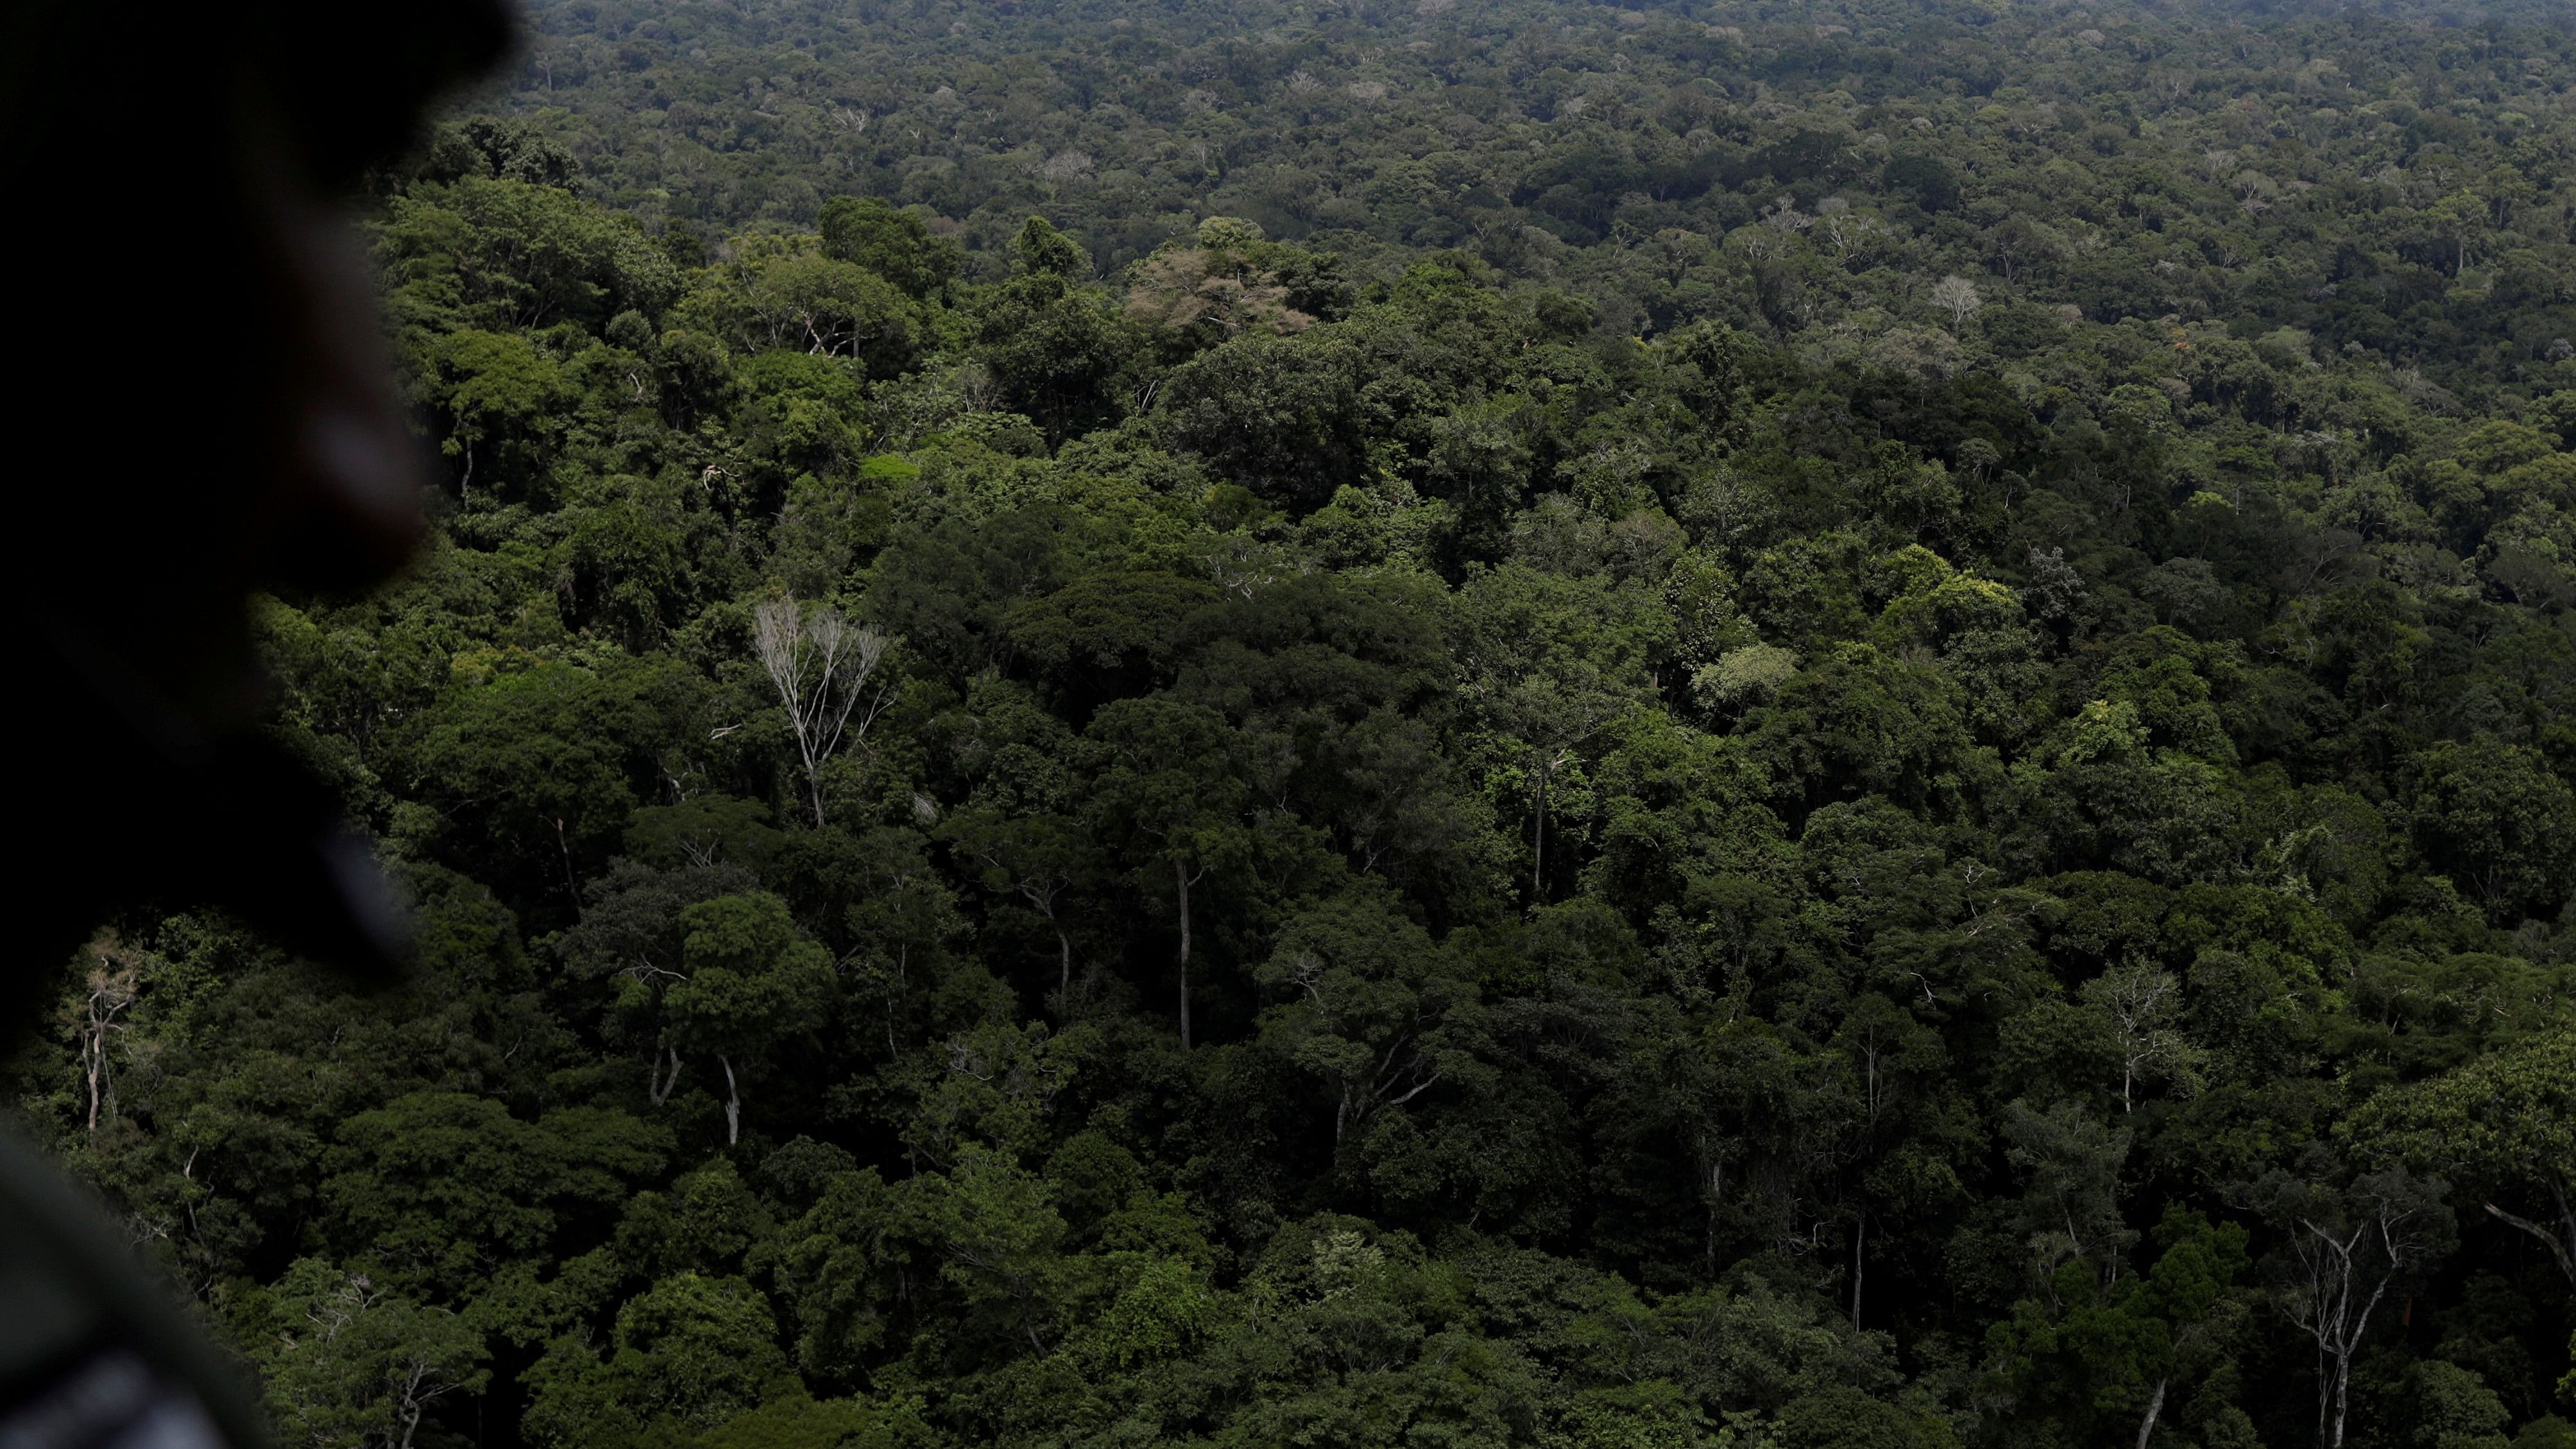 <div class="paragraphs"><p>A view of the&nbsp;Amazon rainforest.&nbsp;</p></div>